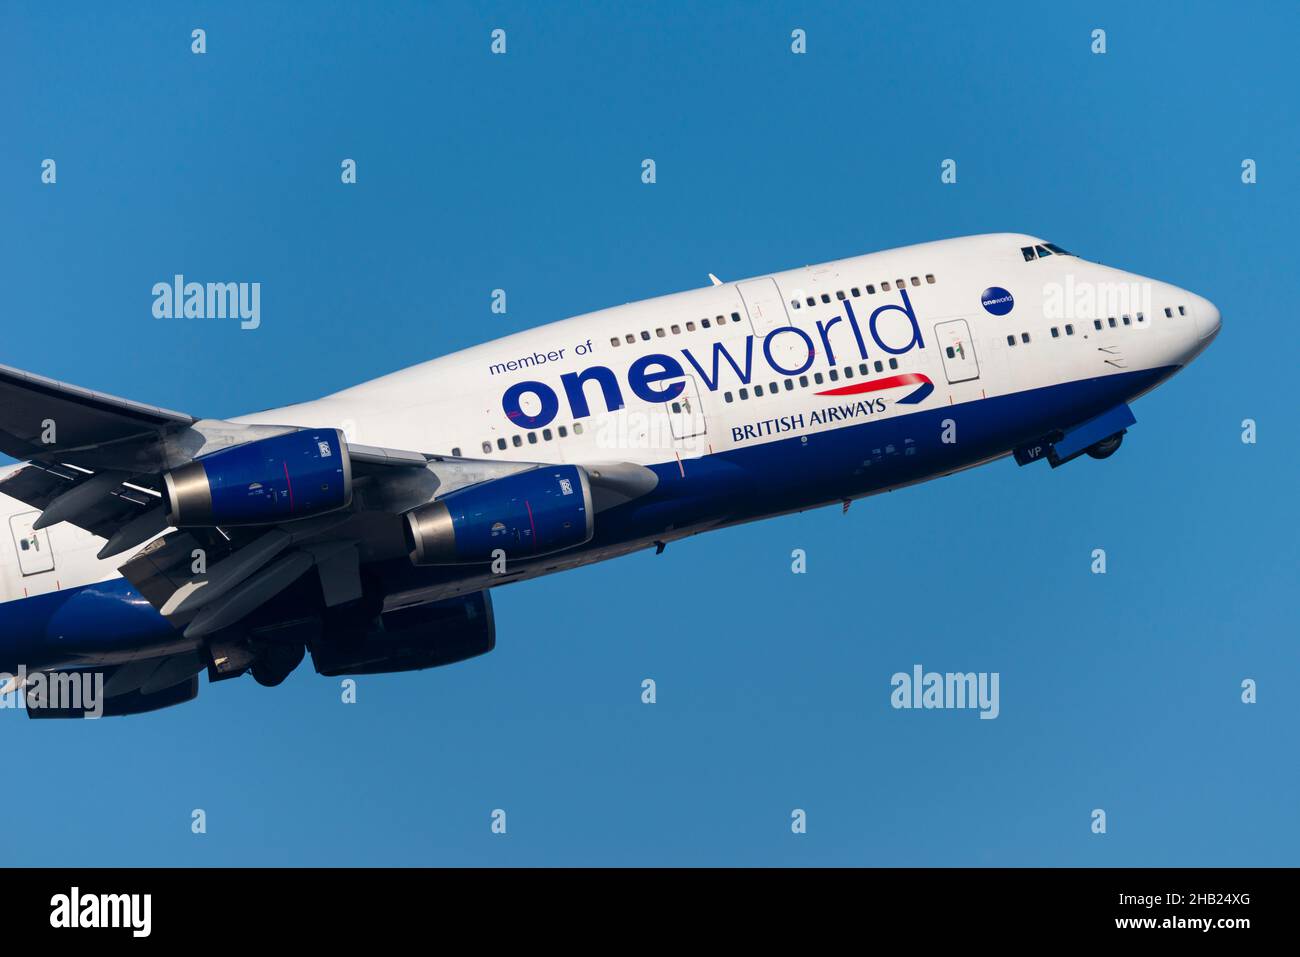 Il marchio dell'alleanza di compagnie aeree oneworld su British Airways Boeing 747-400 Airliner Jet aereo G-CIVP decollo dall'aeroporto di Londra Heathrow in cielo blu Foto Stock